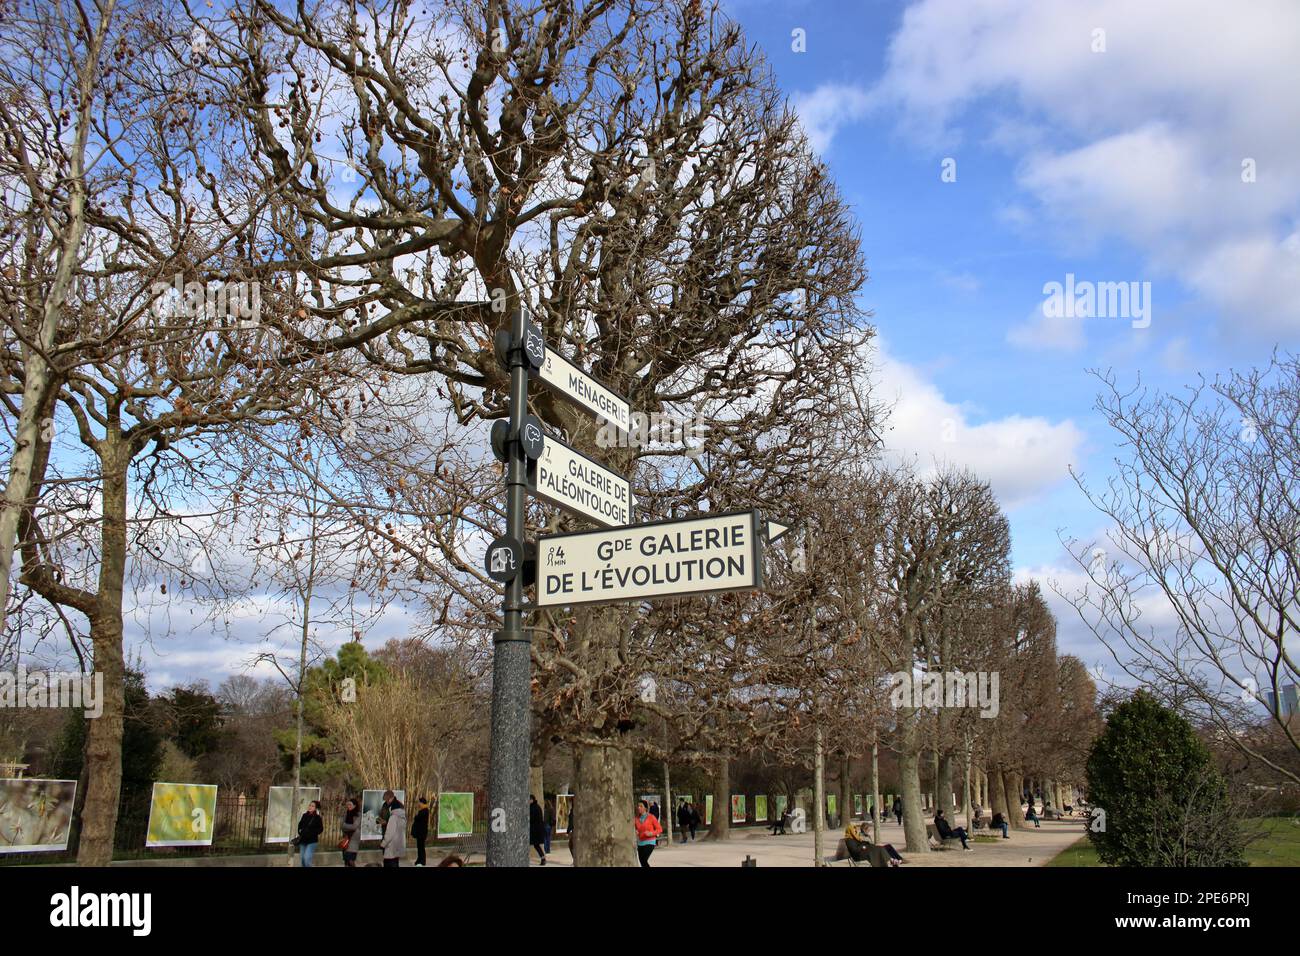 Vue abstraite de la signalisation et des touristes marchant dans le célèbre jardin des plantes situé près de la Seine à Paris France. Banque D'Images